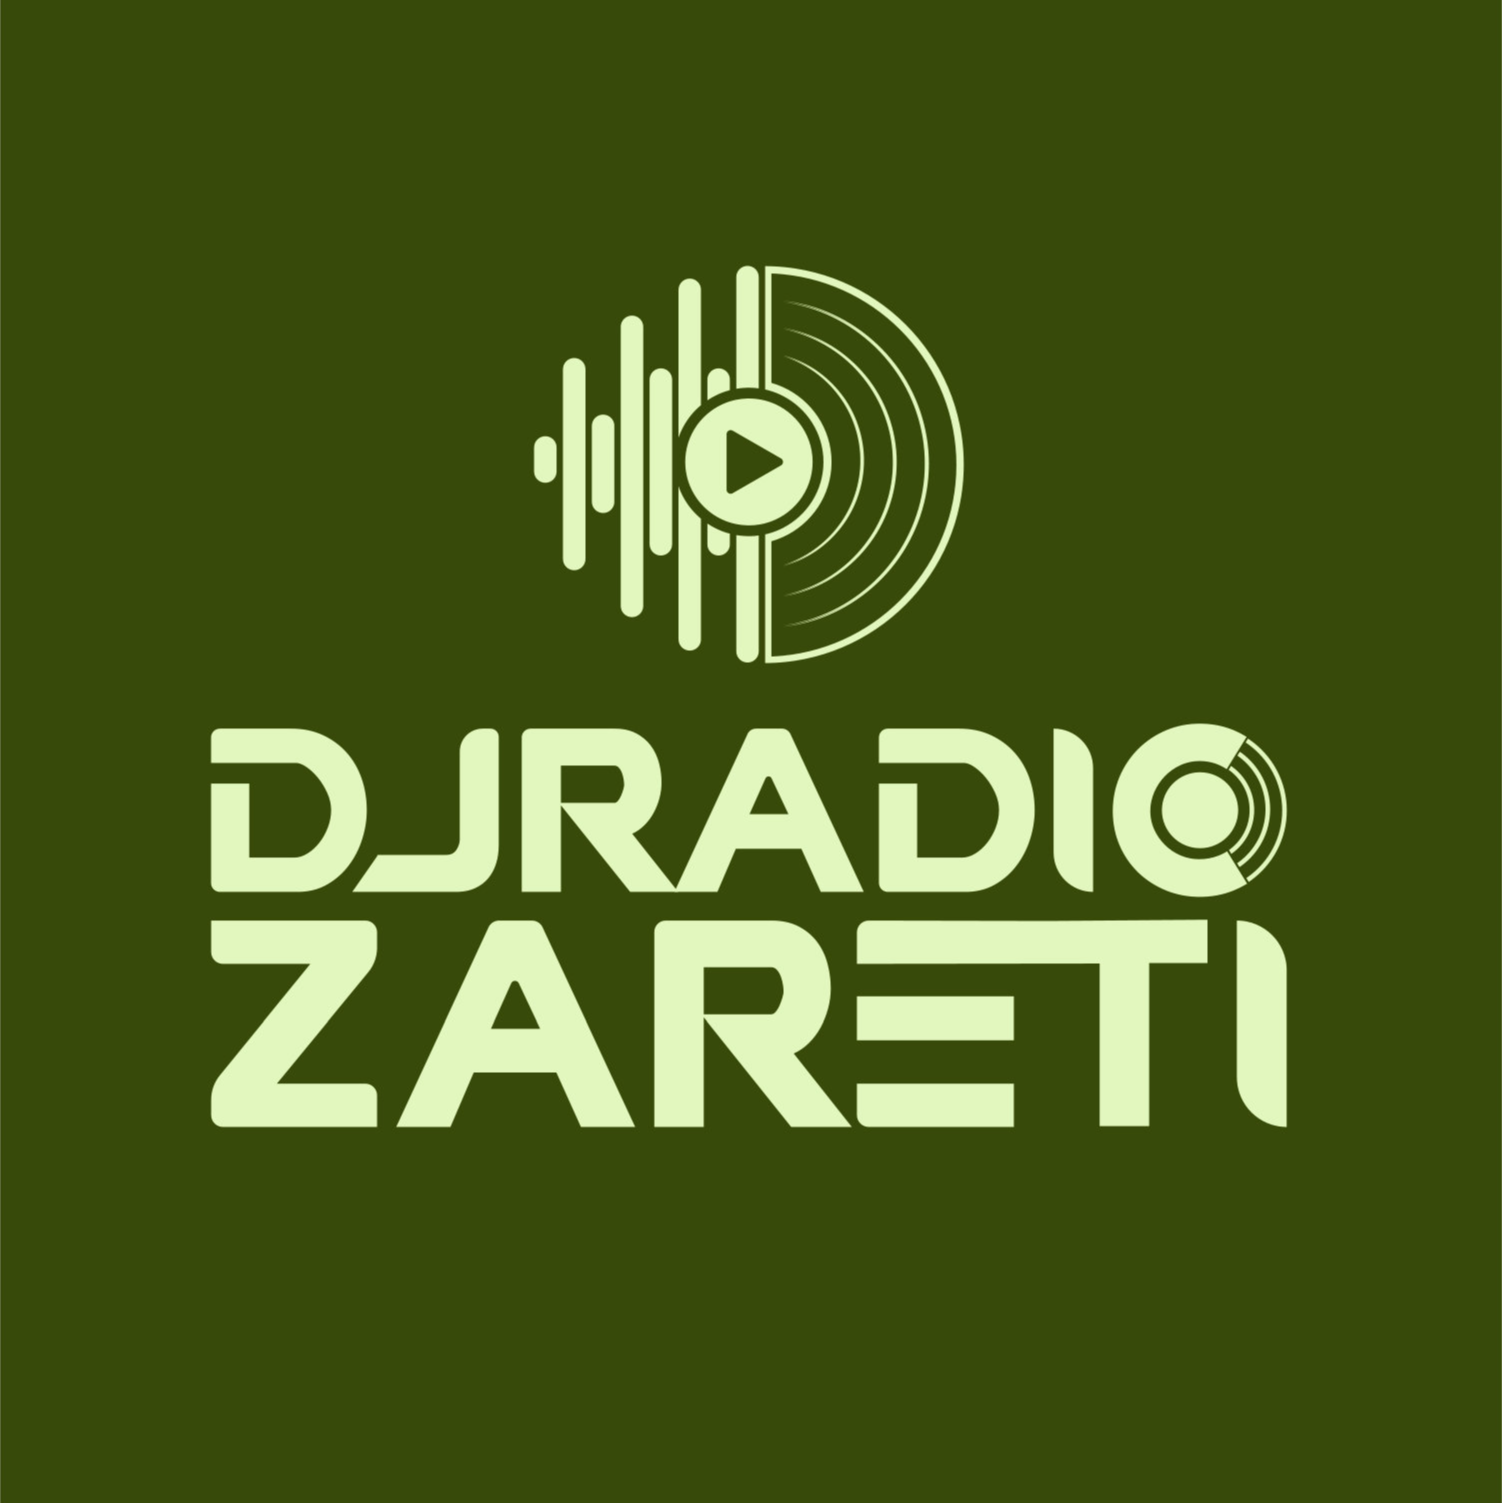 DJ Radio Zareti